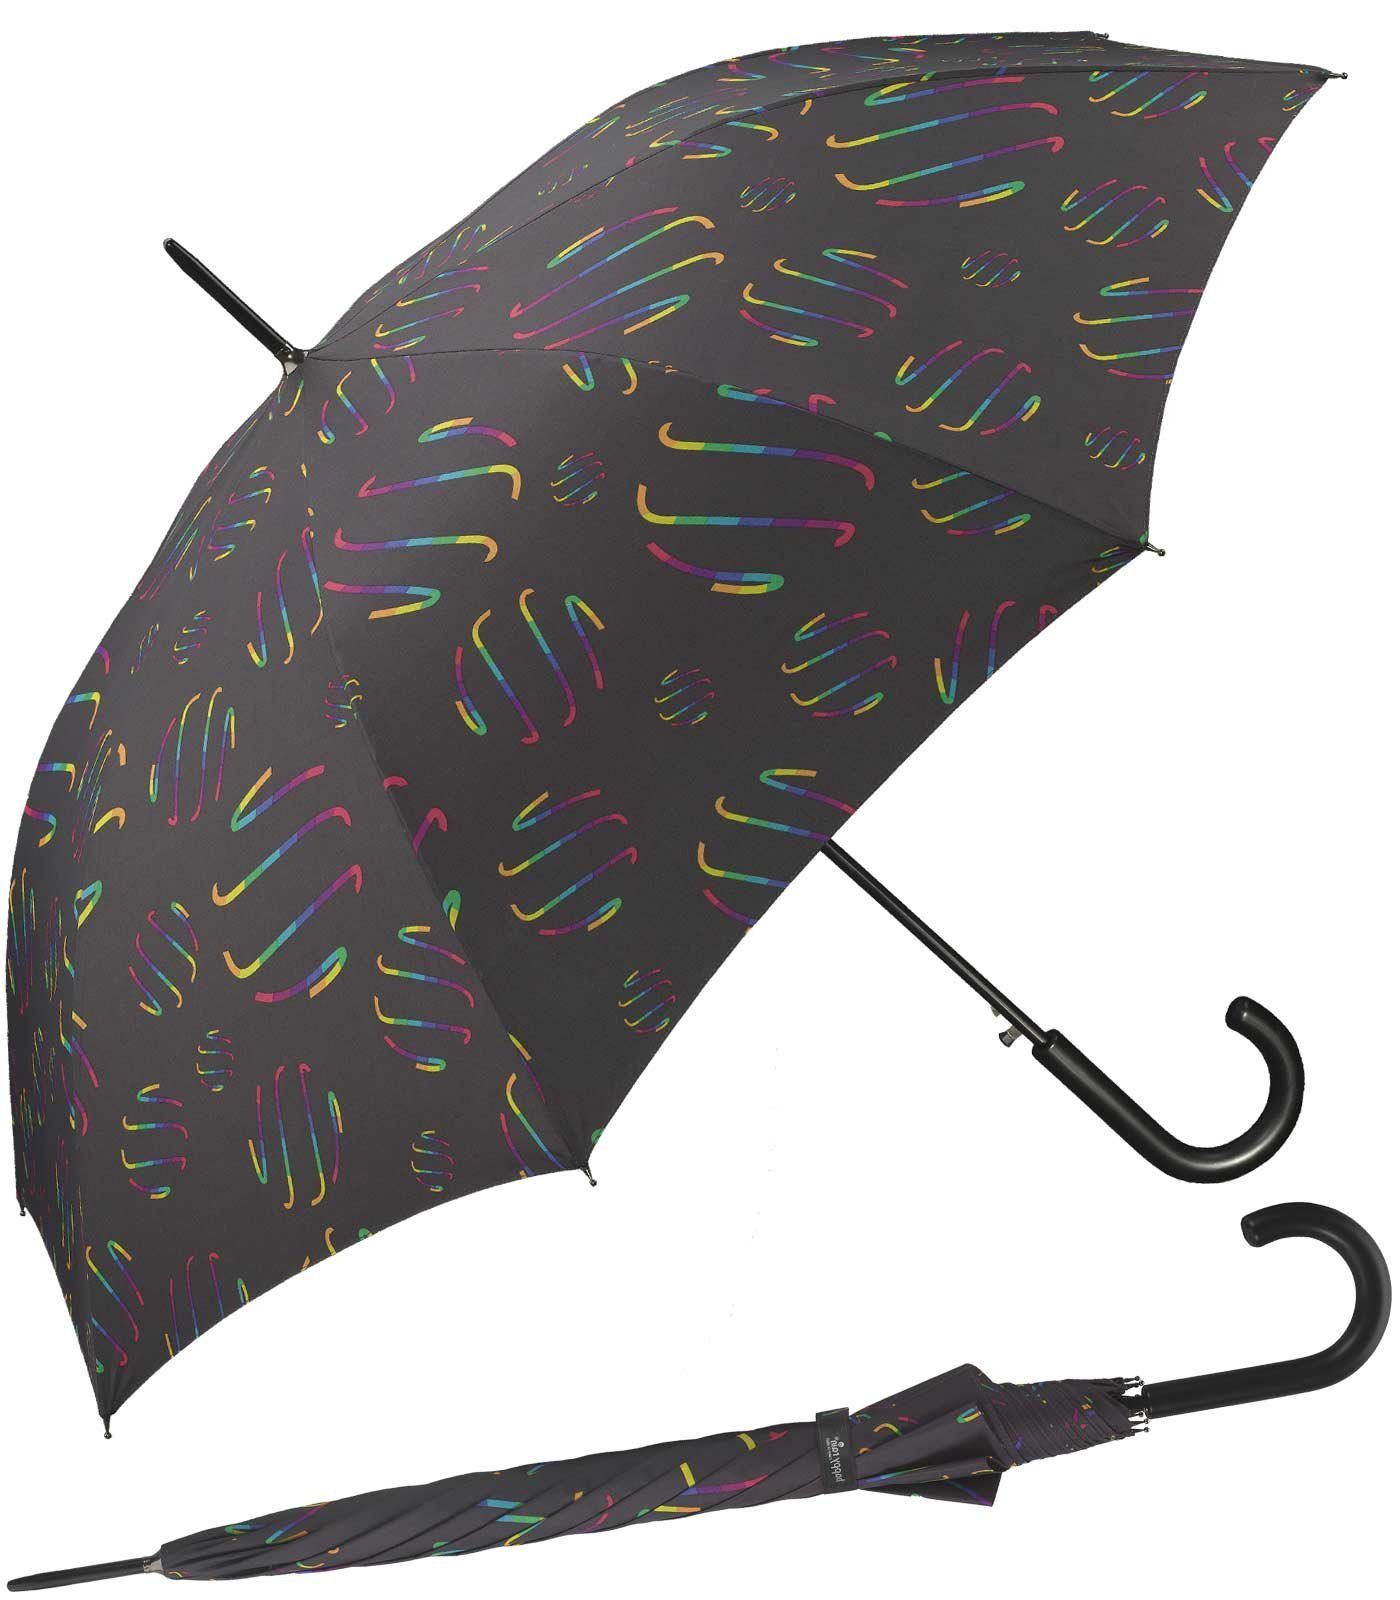 HAPPY RAIN Langregenschirm großer Damen-Regenschirm mit Auf-Automatik, verspielte Regenbogen-Wirbel auf dunklem Grund